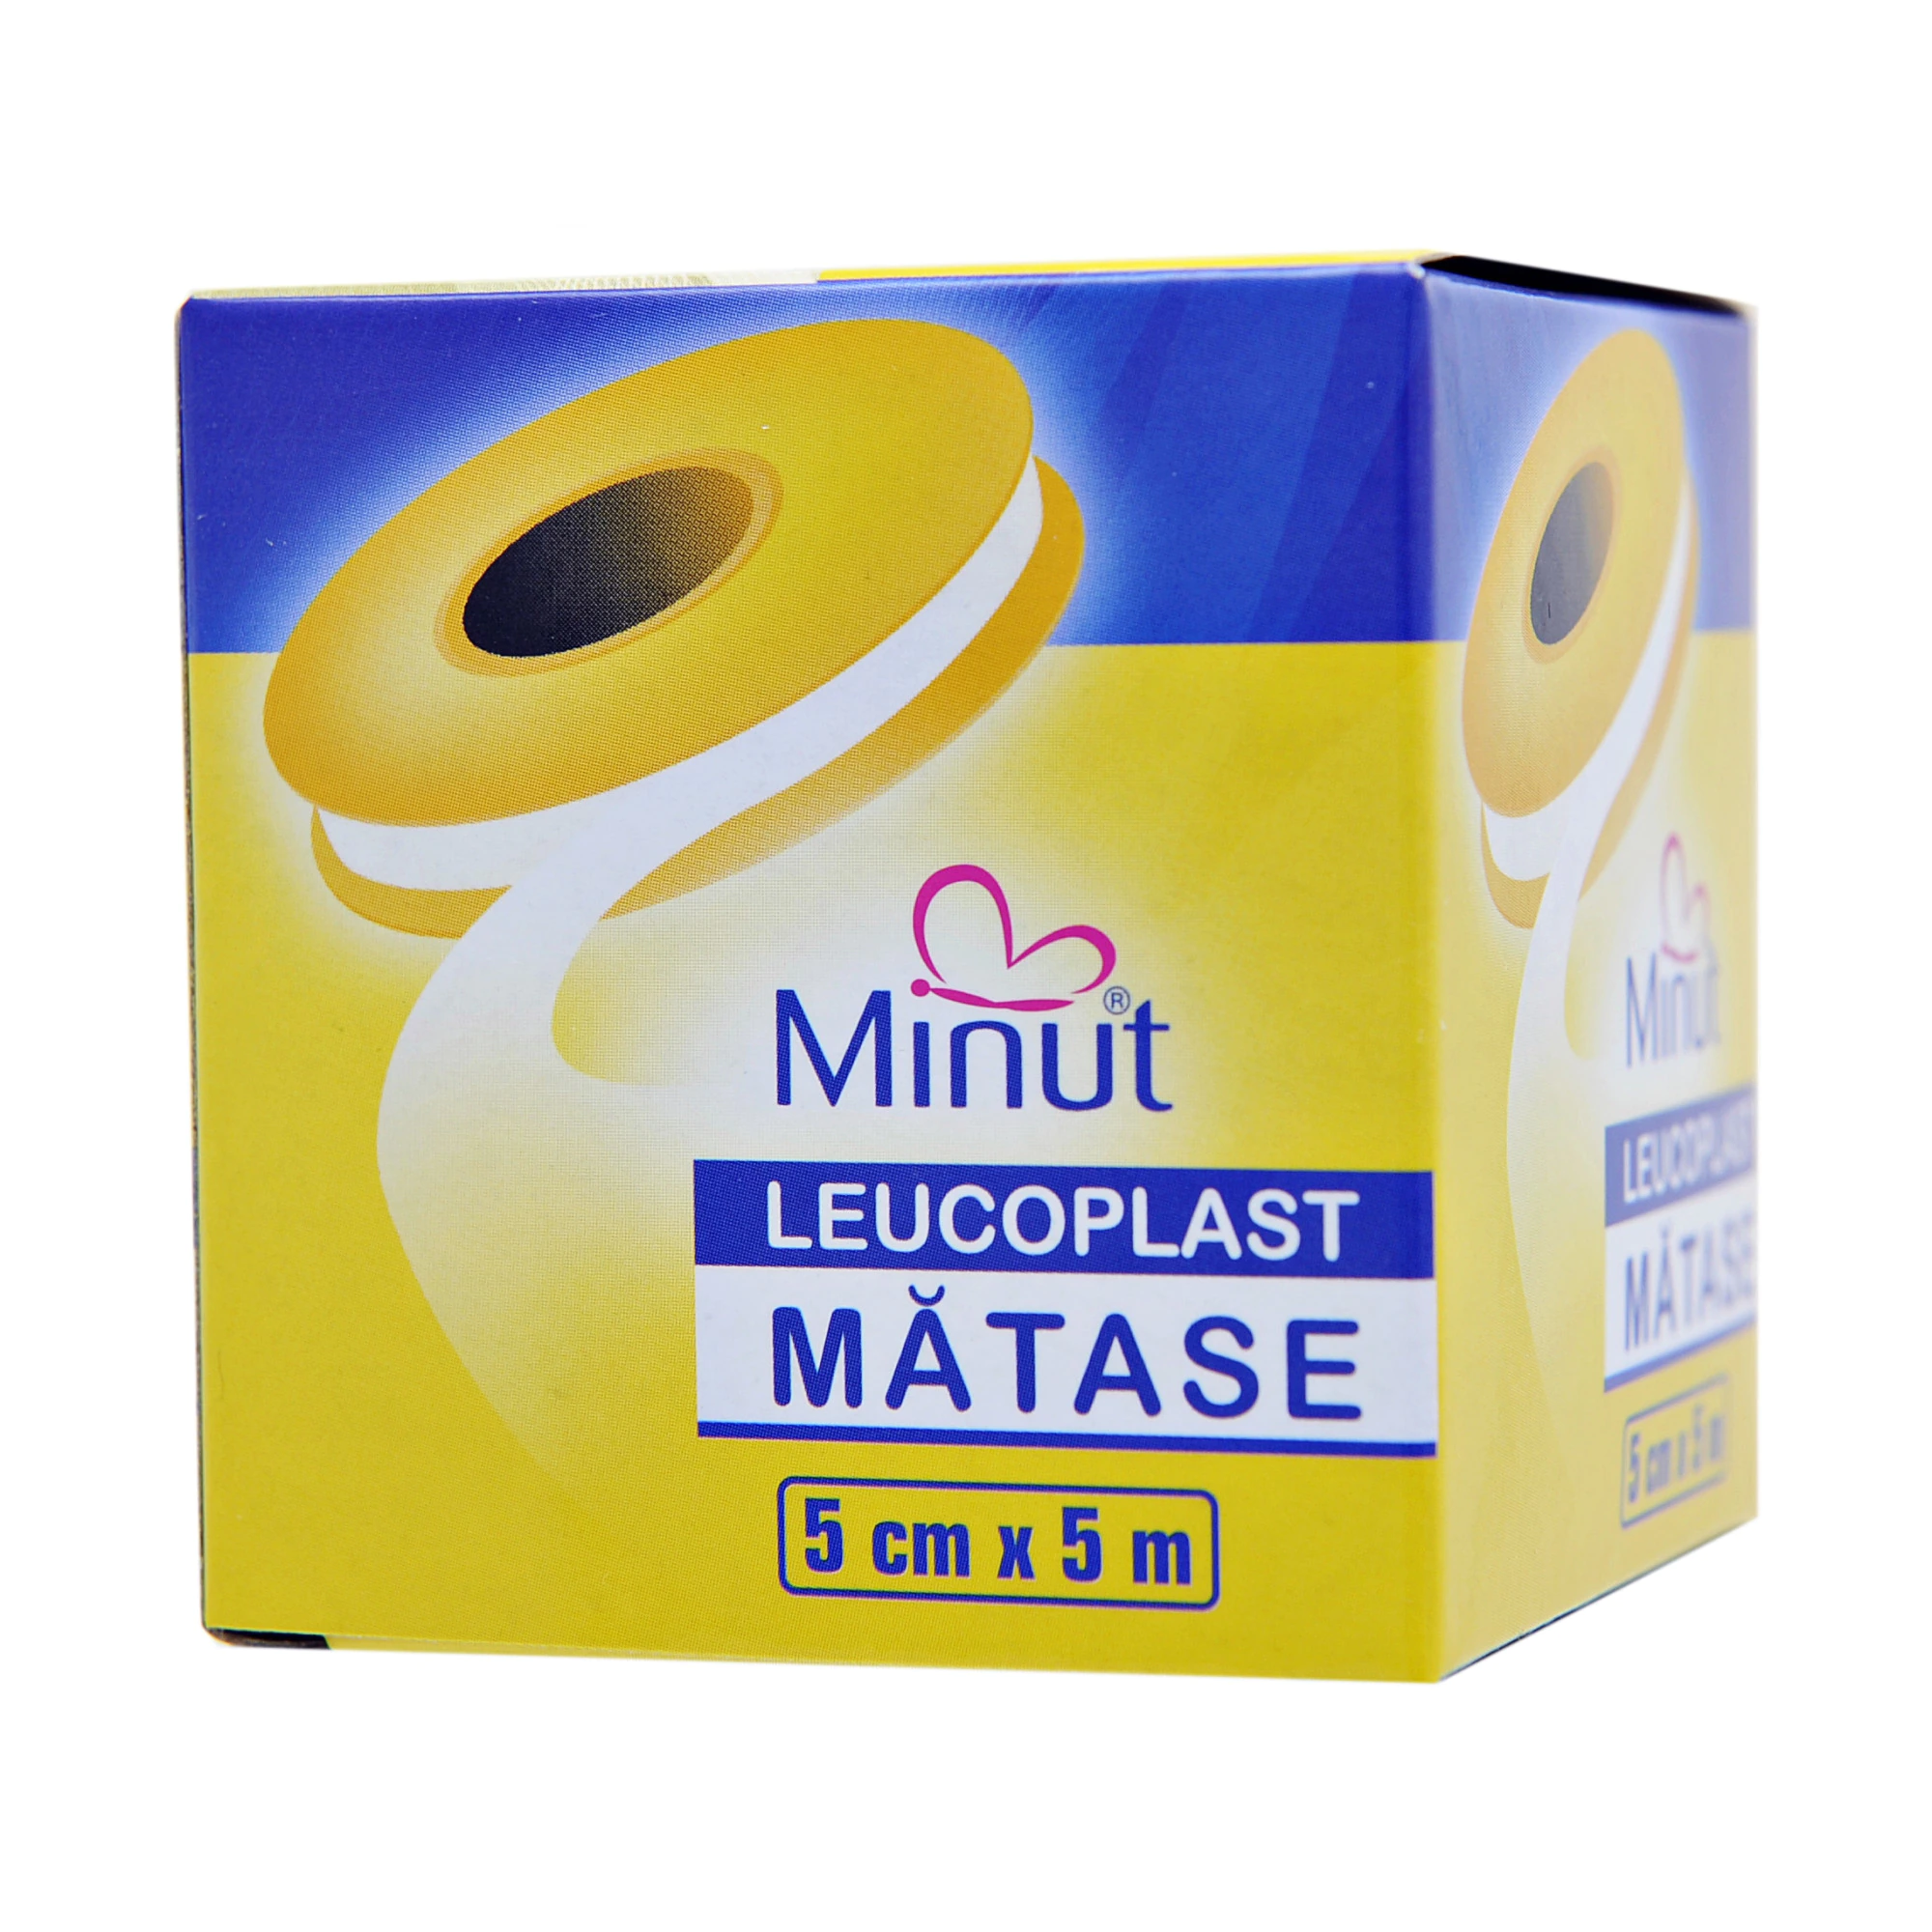 Dispozitive medicale - Leucoplast Minut mătase 5 cm x 5 m * 1 bucată, clinicafarm.ro